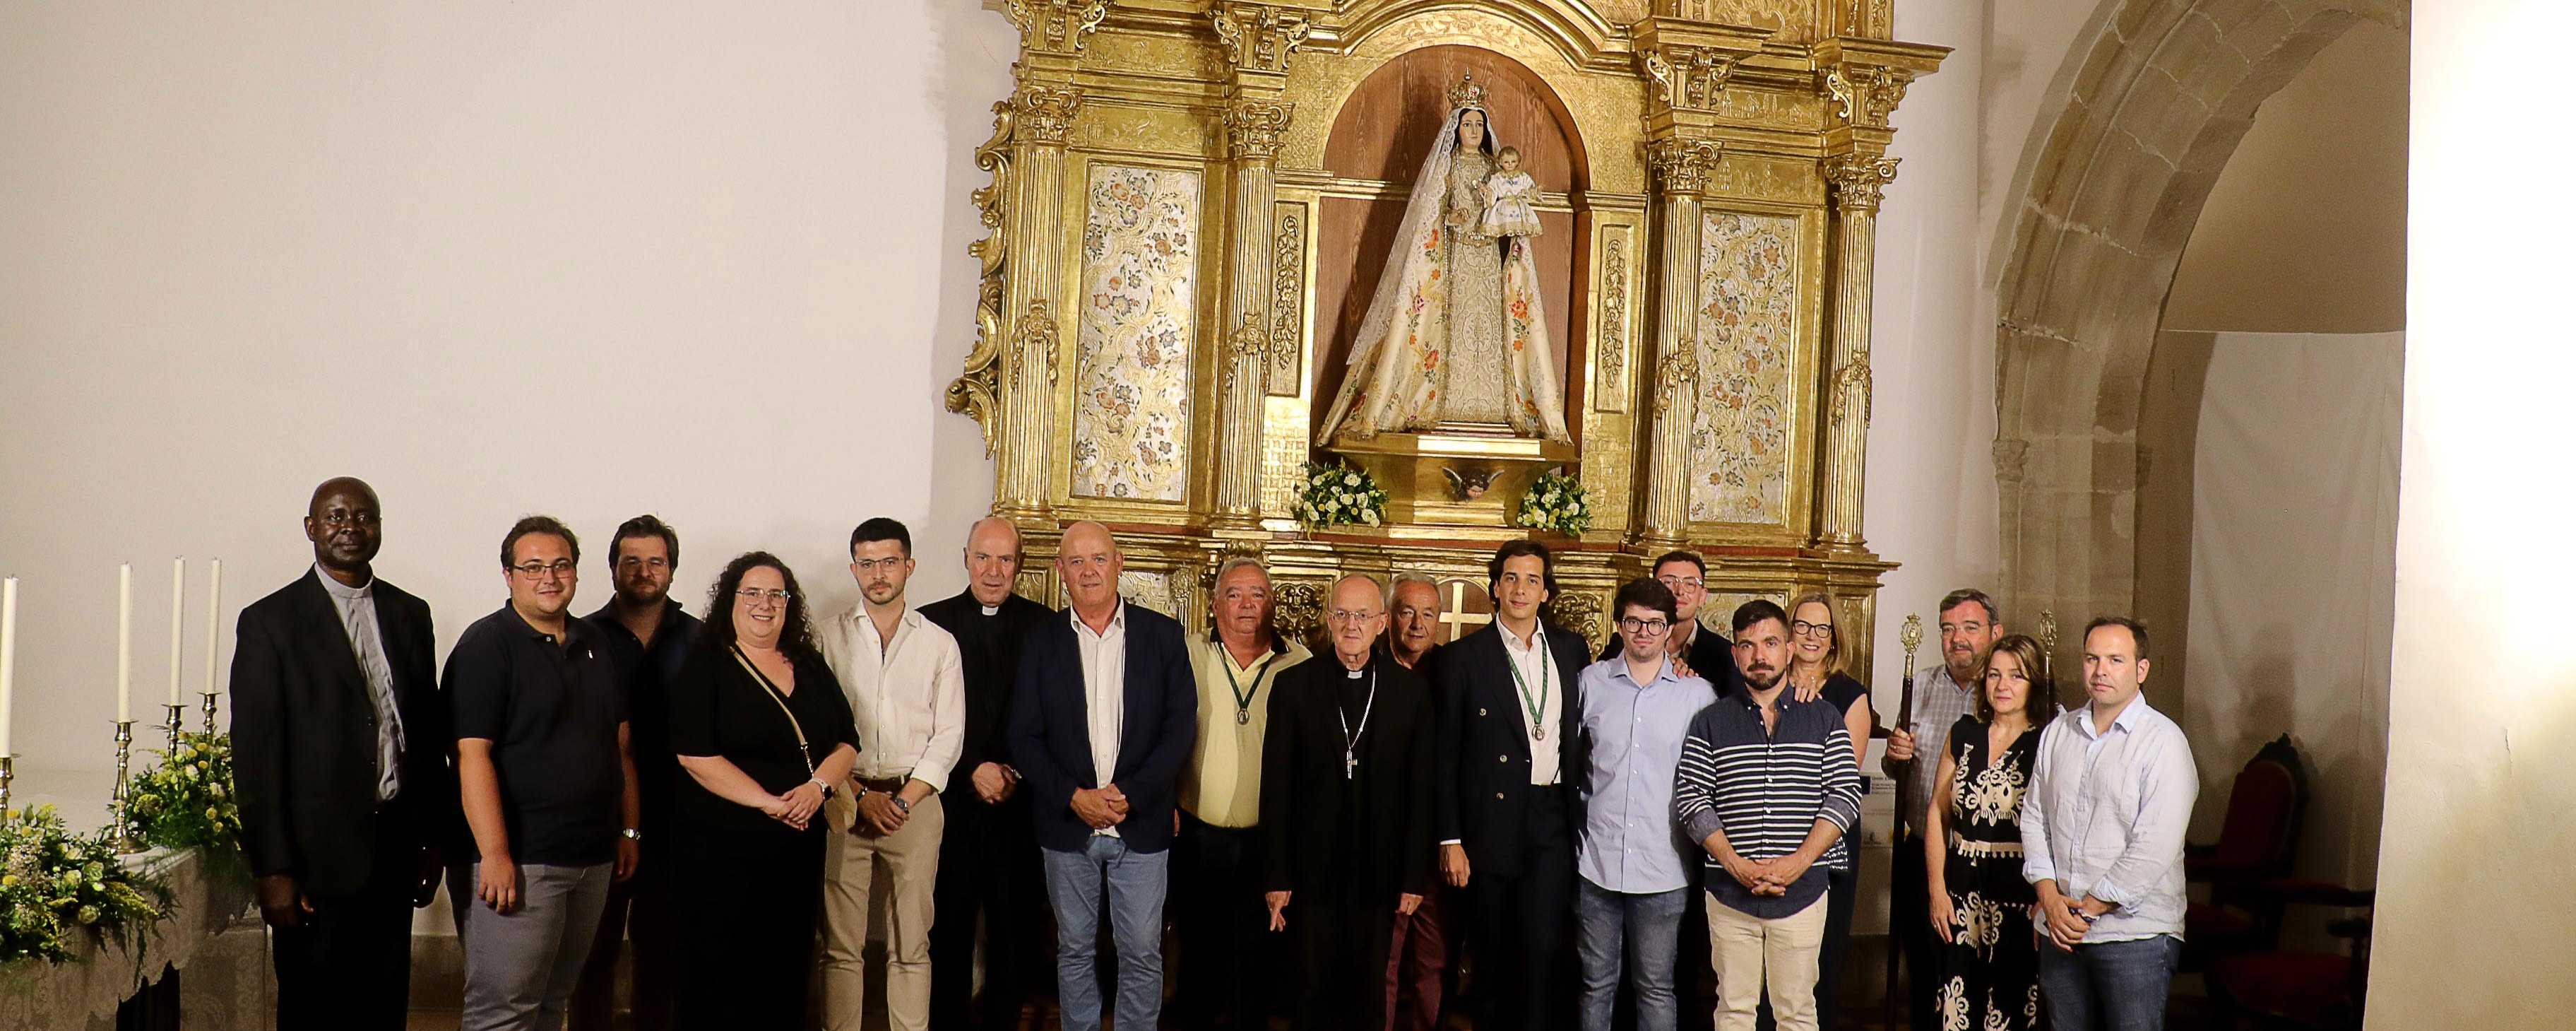 Inaugurada la sobresaliente restauración del retablo barroco de Almonacid